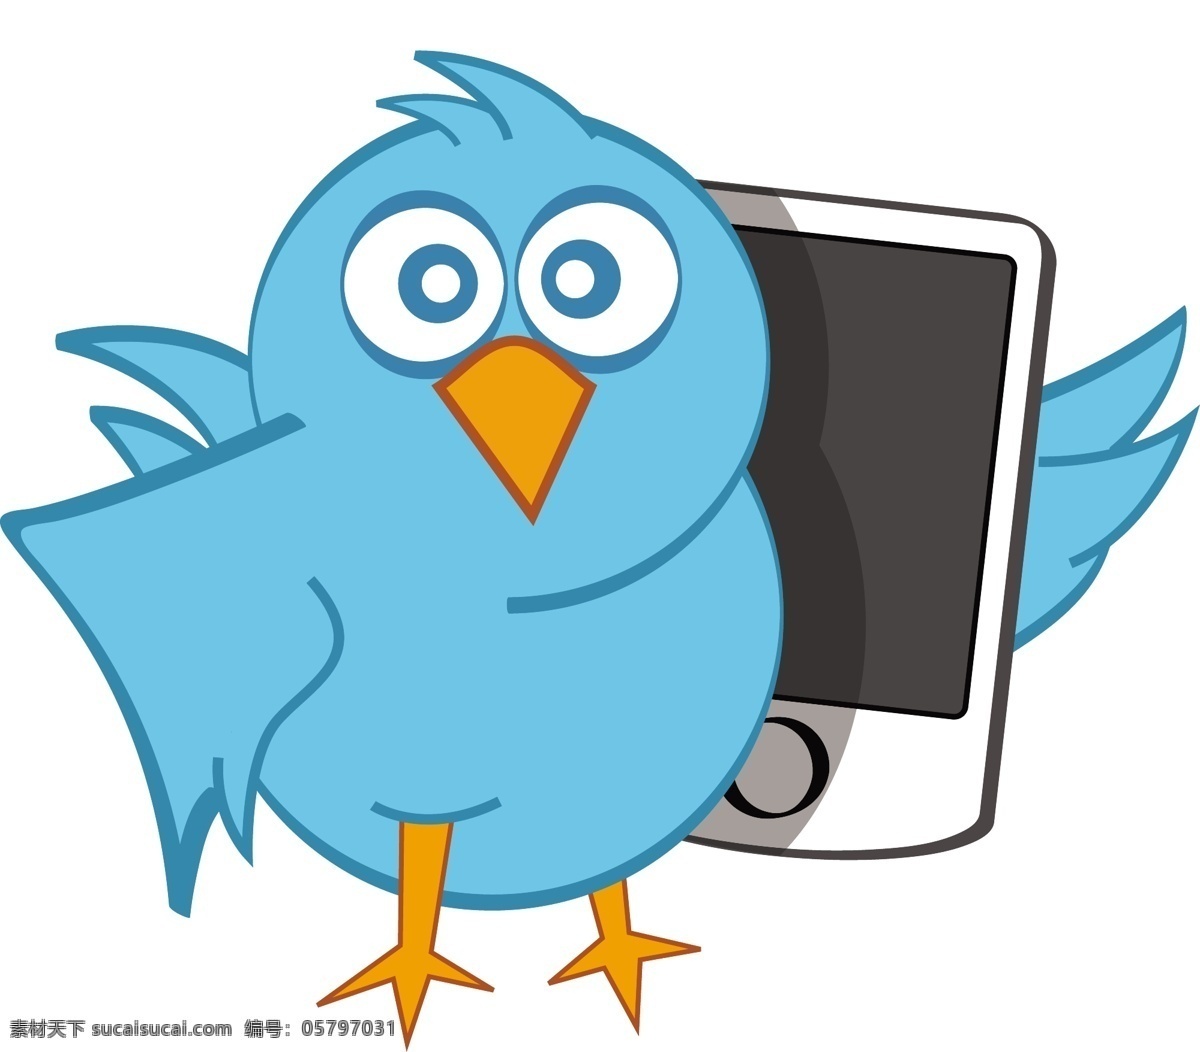 蓝鸟 推 特 手机 矢量 图形 web 创意 高分辨率 接口 蓝色的 媒体 免费 社会 书签 病 媒 生物 时尚 原始的 高质量 质量 新鲜的 设计新的 新的 ui元素 hd 元素 详细的 图标 推特 推特鸟 移动电话 网络 载体 矢量图